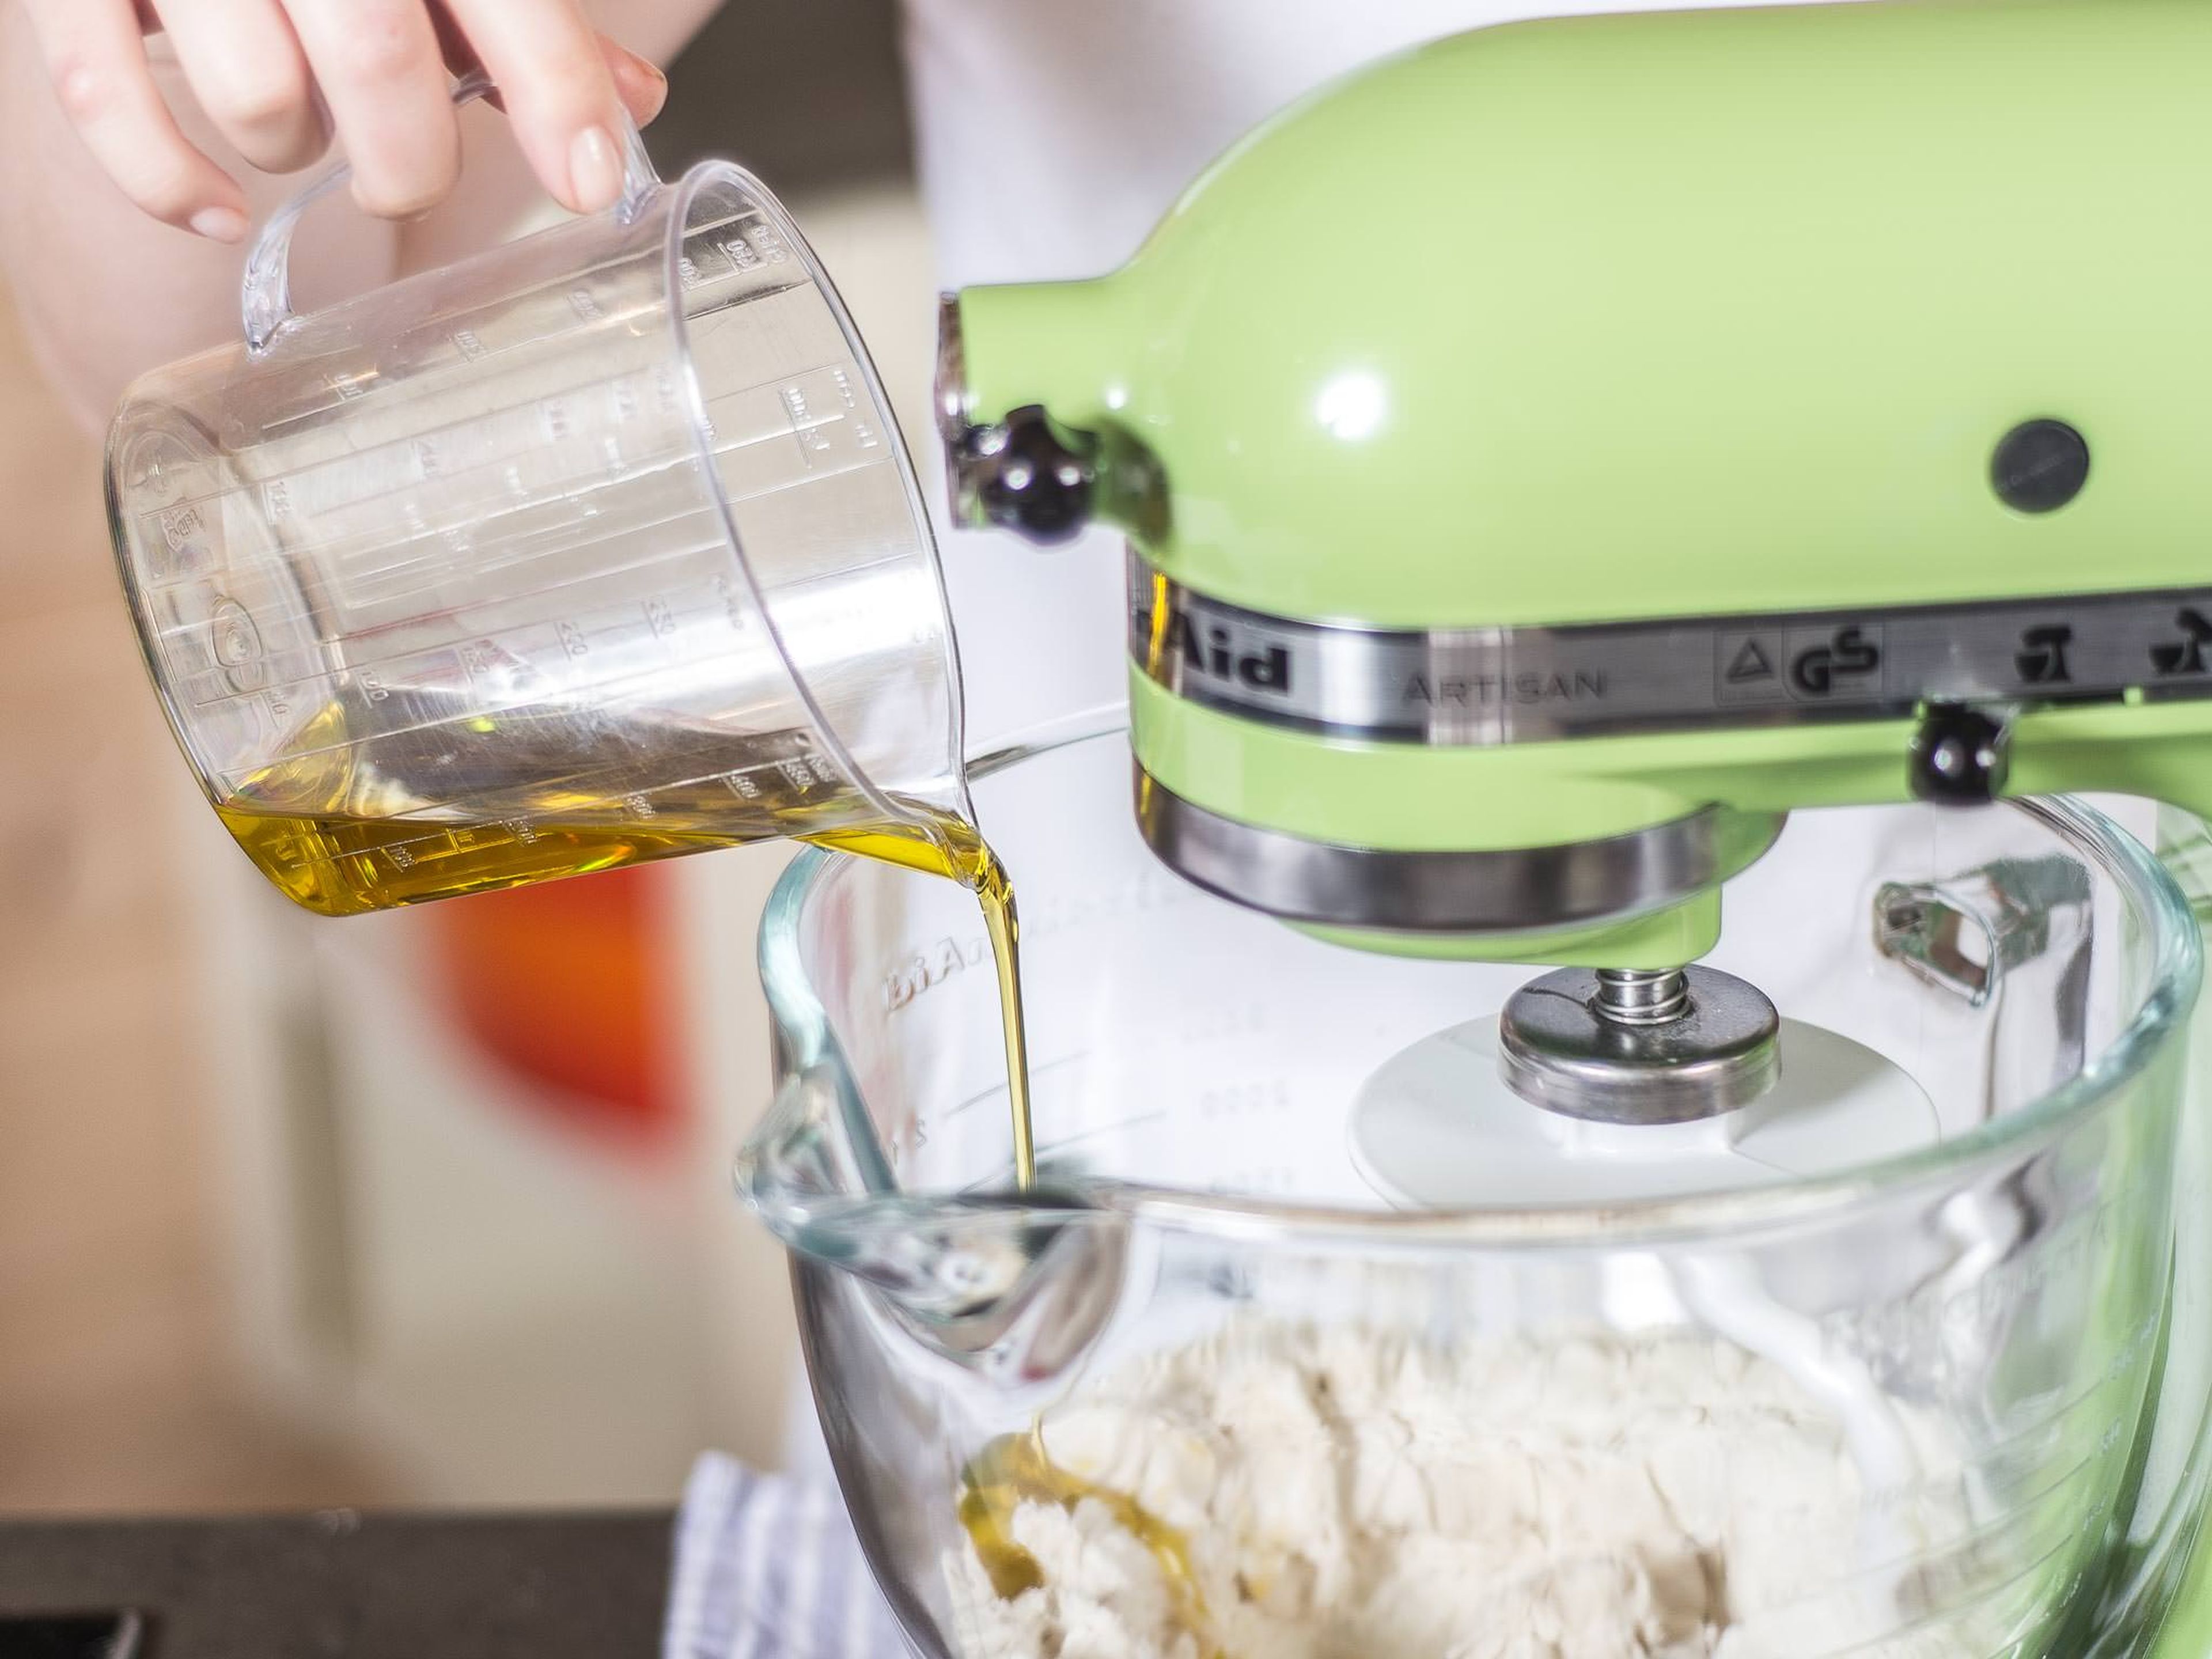 Mehl, Wasser, Hefe, Zucker, Salz und Olivenöl in einer Küchenmaschine oder wahlweise mit den Händen zu einem geschmeidigen Teig kneten.